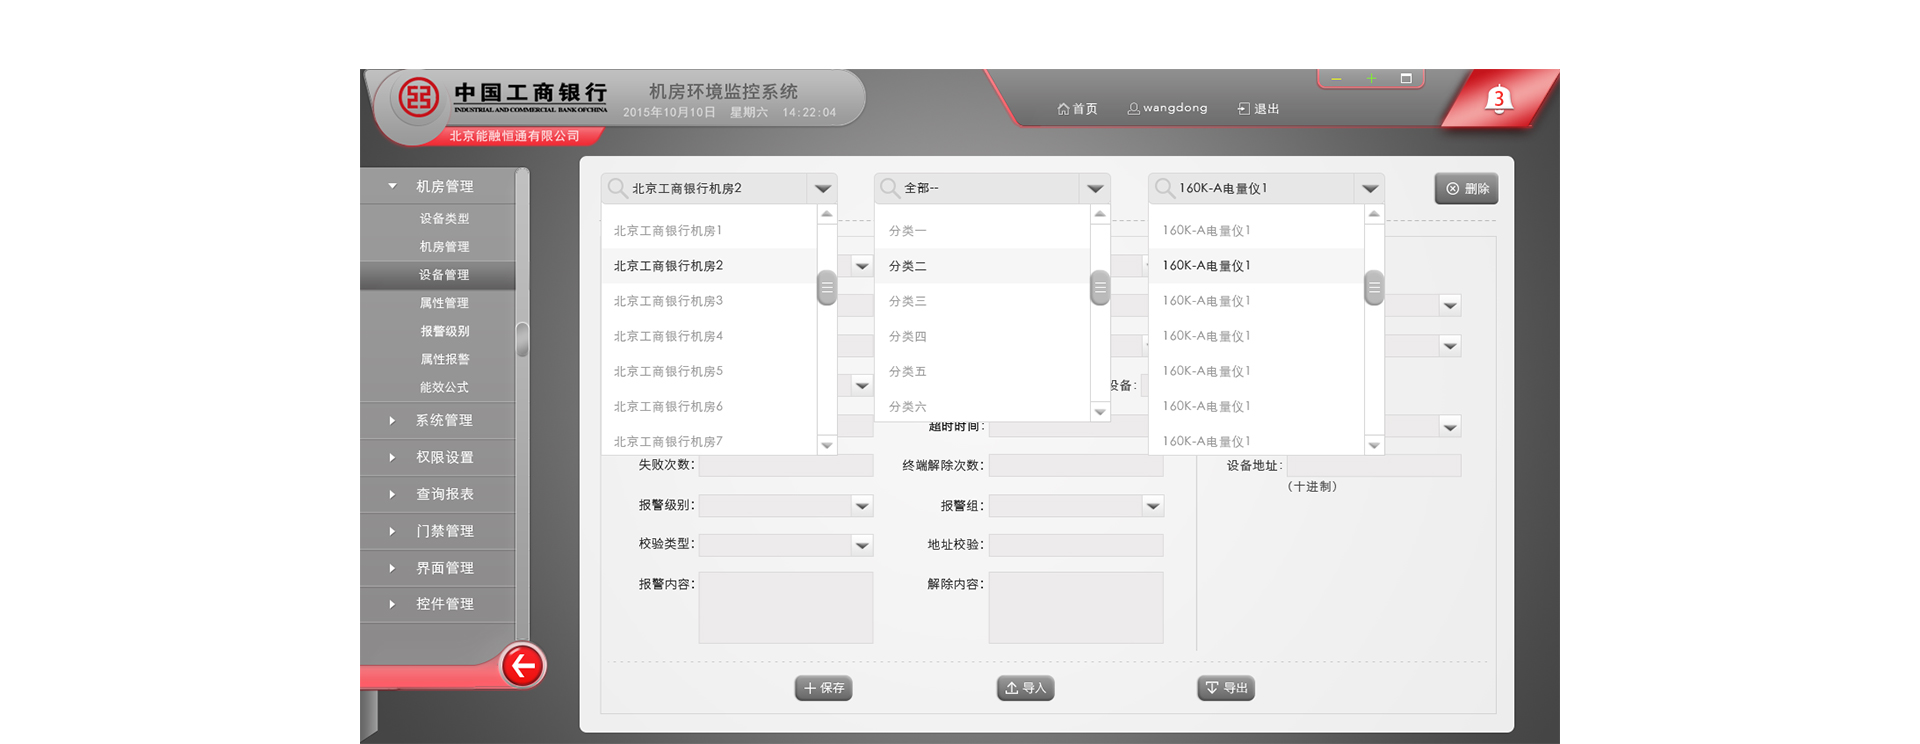 中国工商银行机房环境监测系统